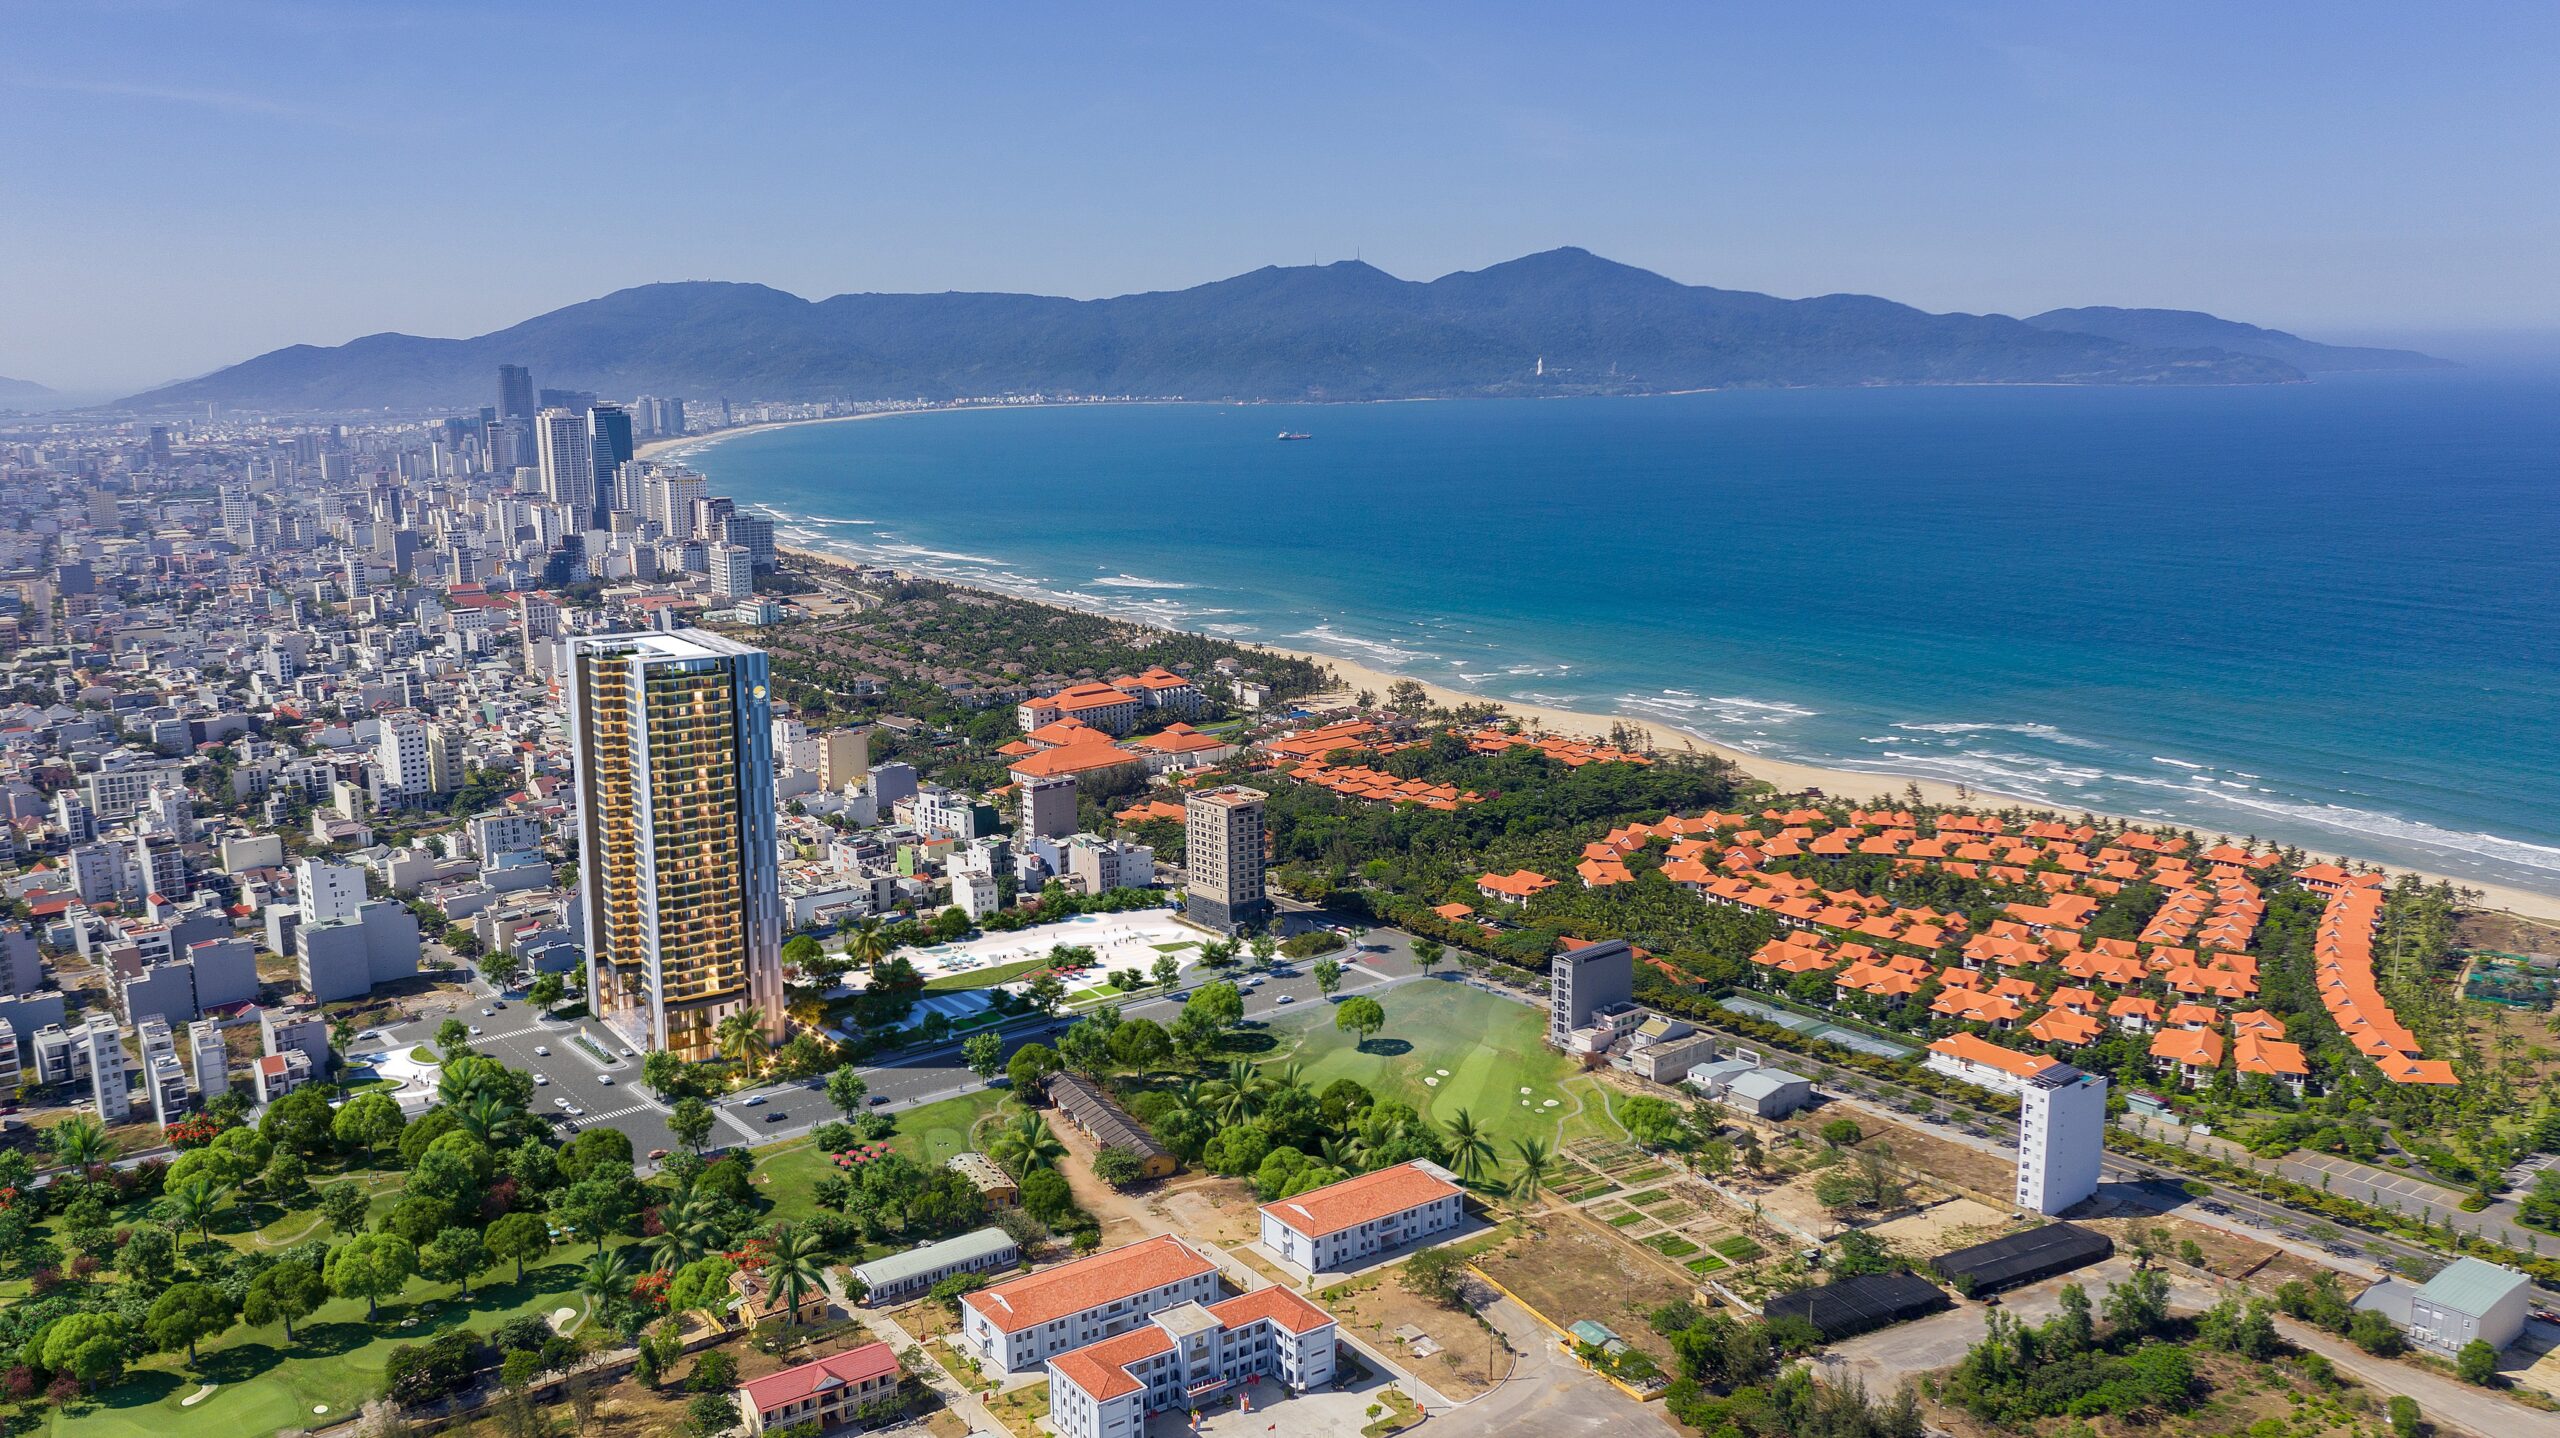 Tiềm năng thị trường căn hộ chung cư Đà Nẵng - Viet Nam Smart City